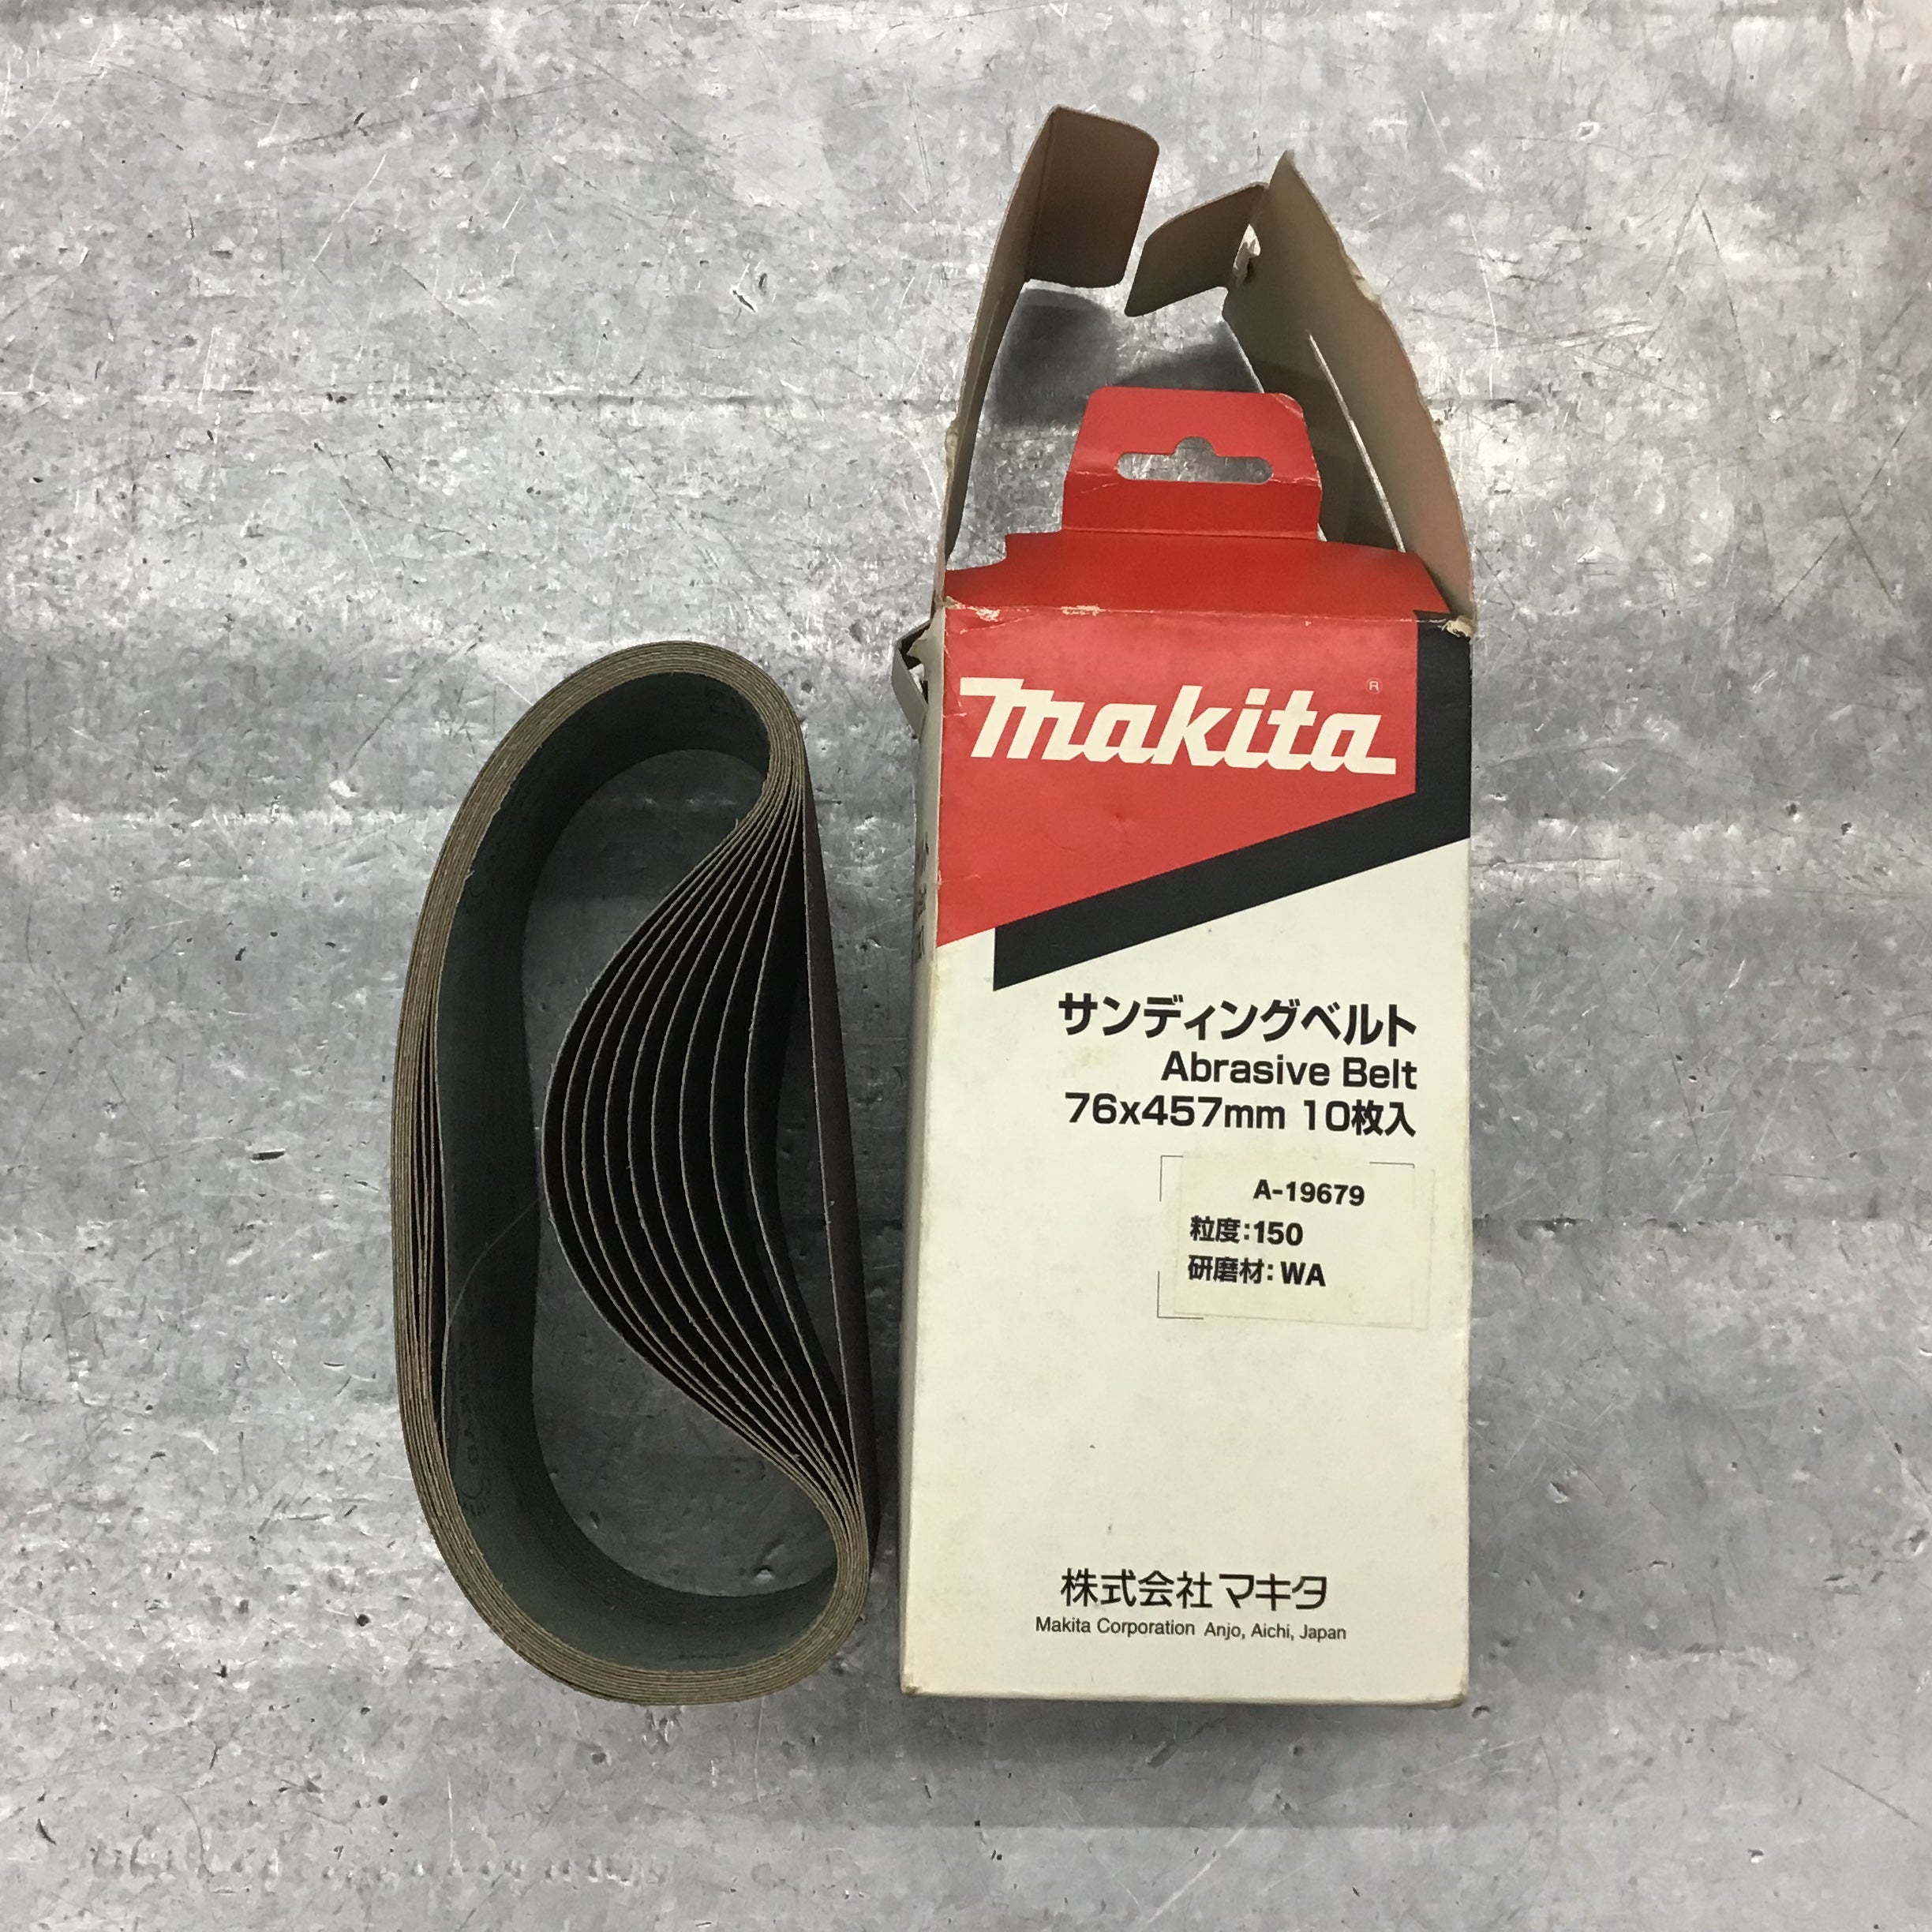 パワーツール マキタ(Makita) ベルトサンダ 吸塵装置式 76mm